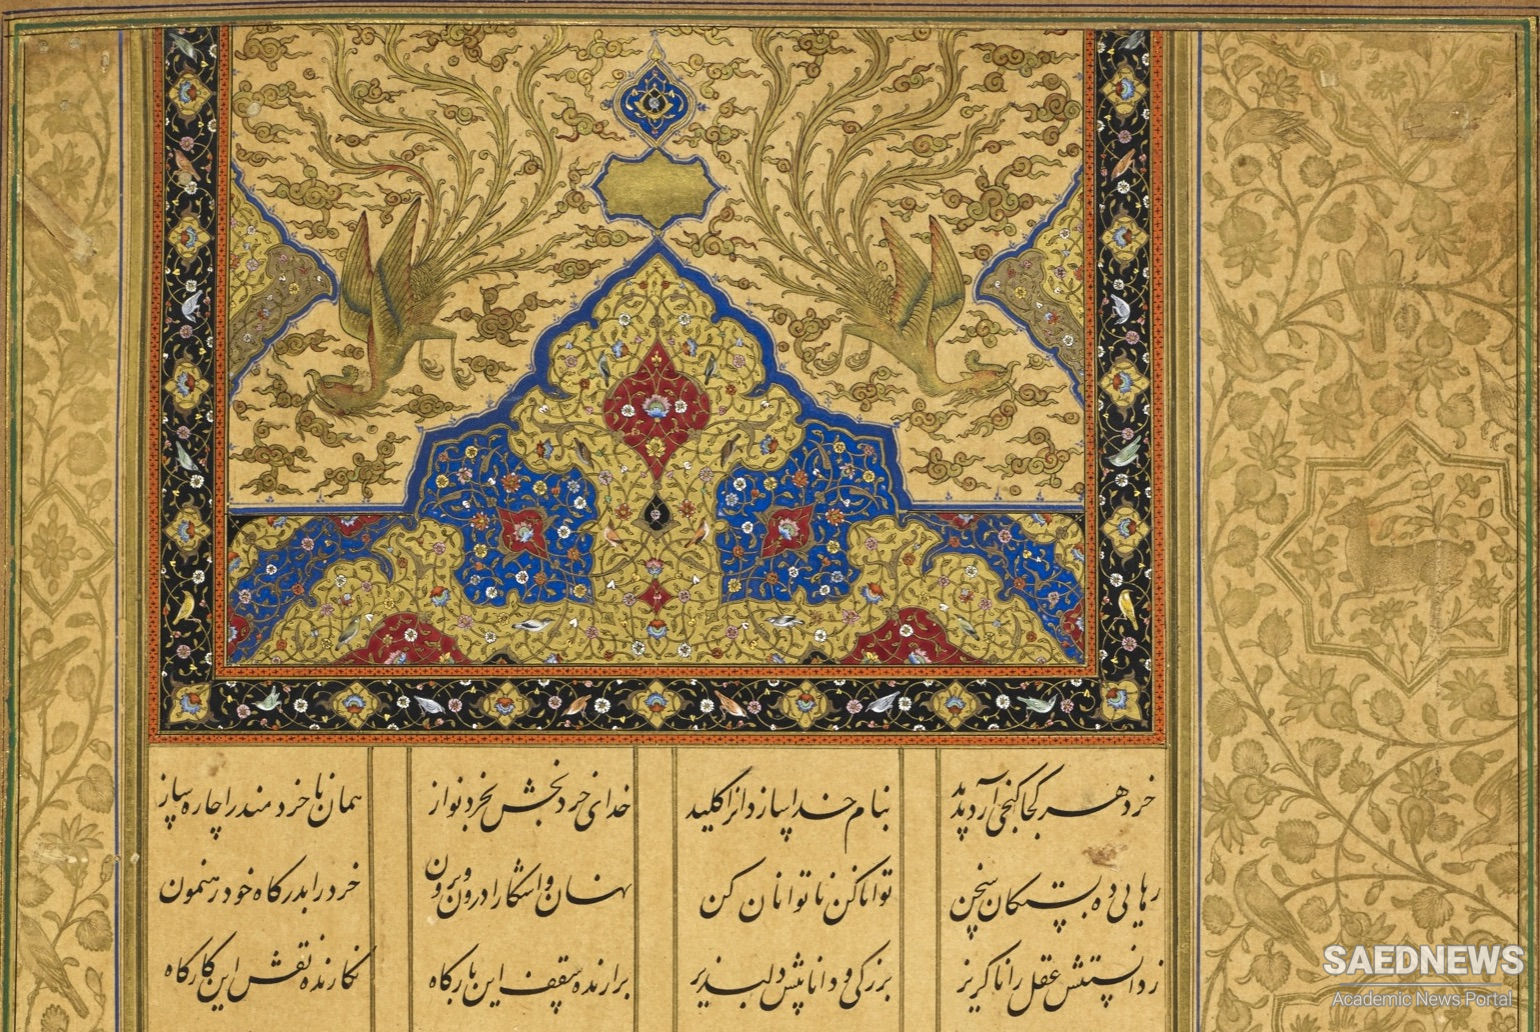 आगे के विकास के लिए समृद्ध साहित्य परंपरा और फारसी भाषा की क्षमता